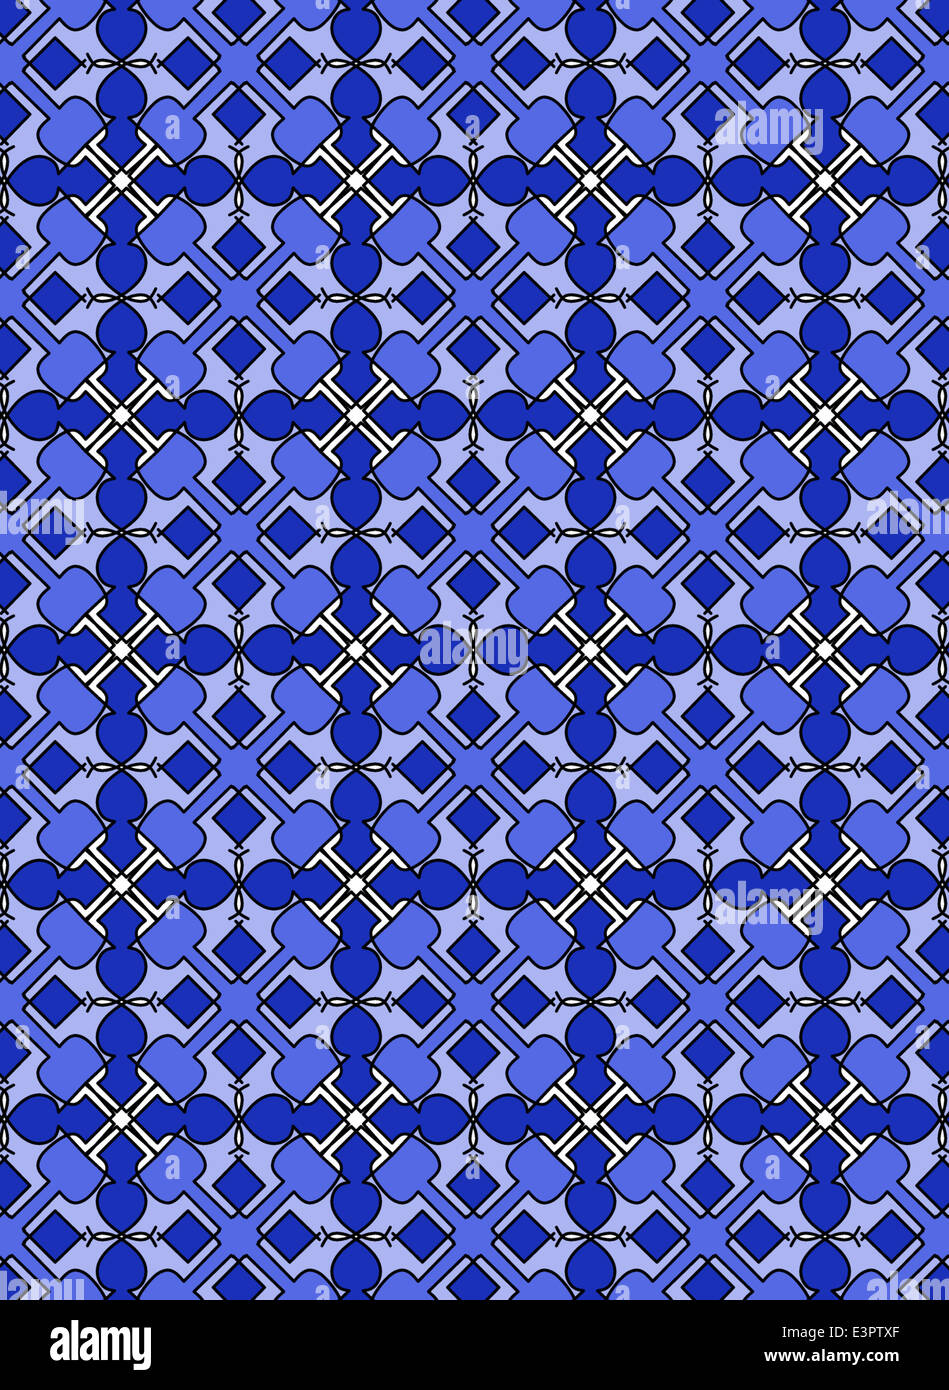 Illustration du papier peint à motifs symétriques Banque D'Images